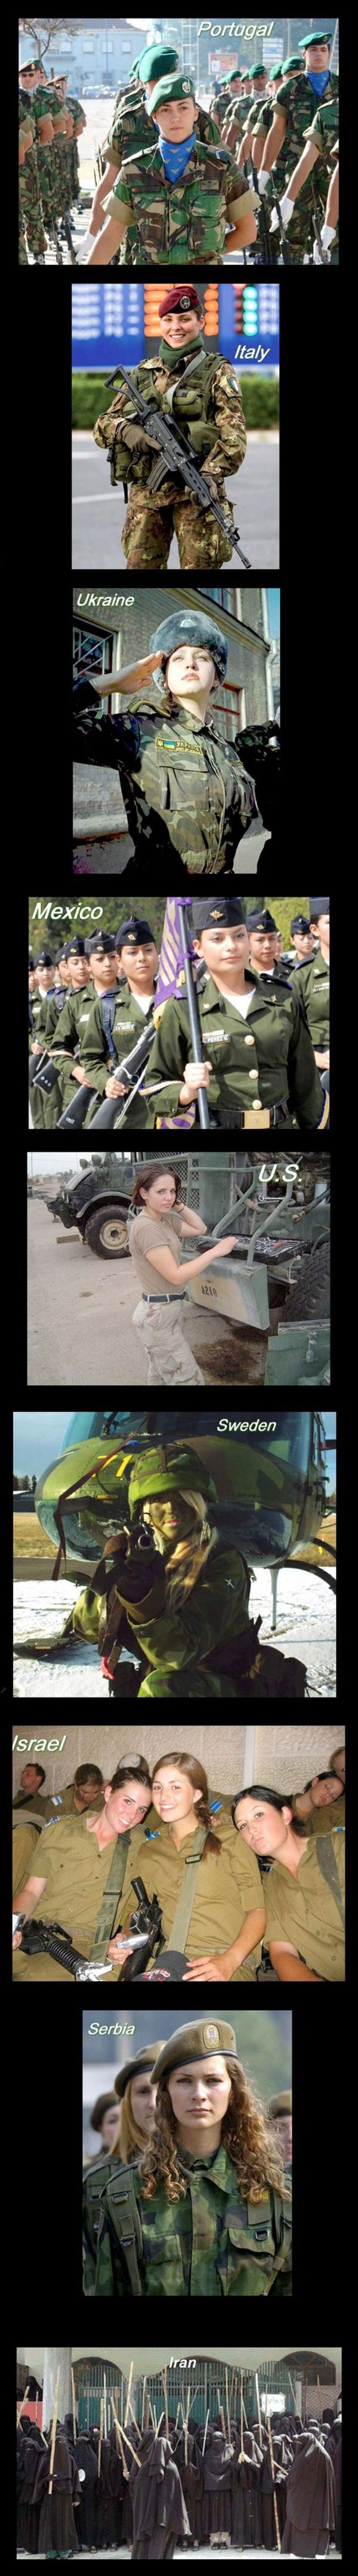 Army Women Around The World - Military humor